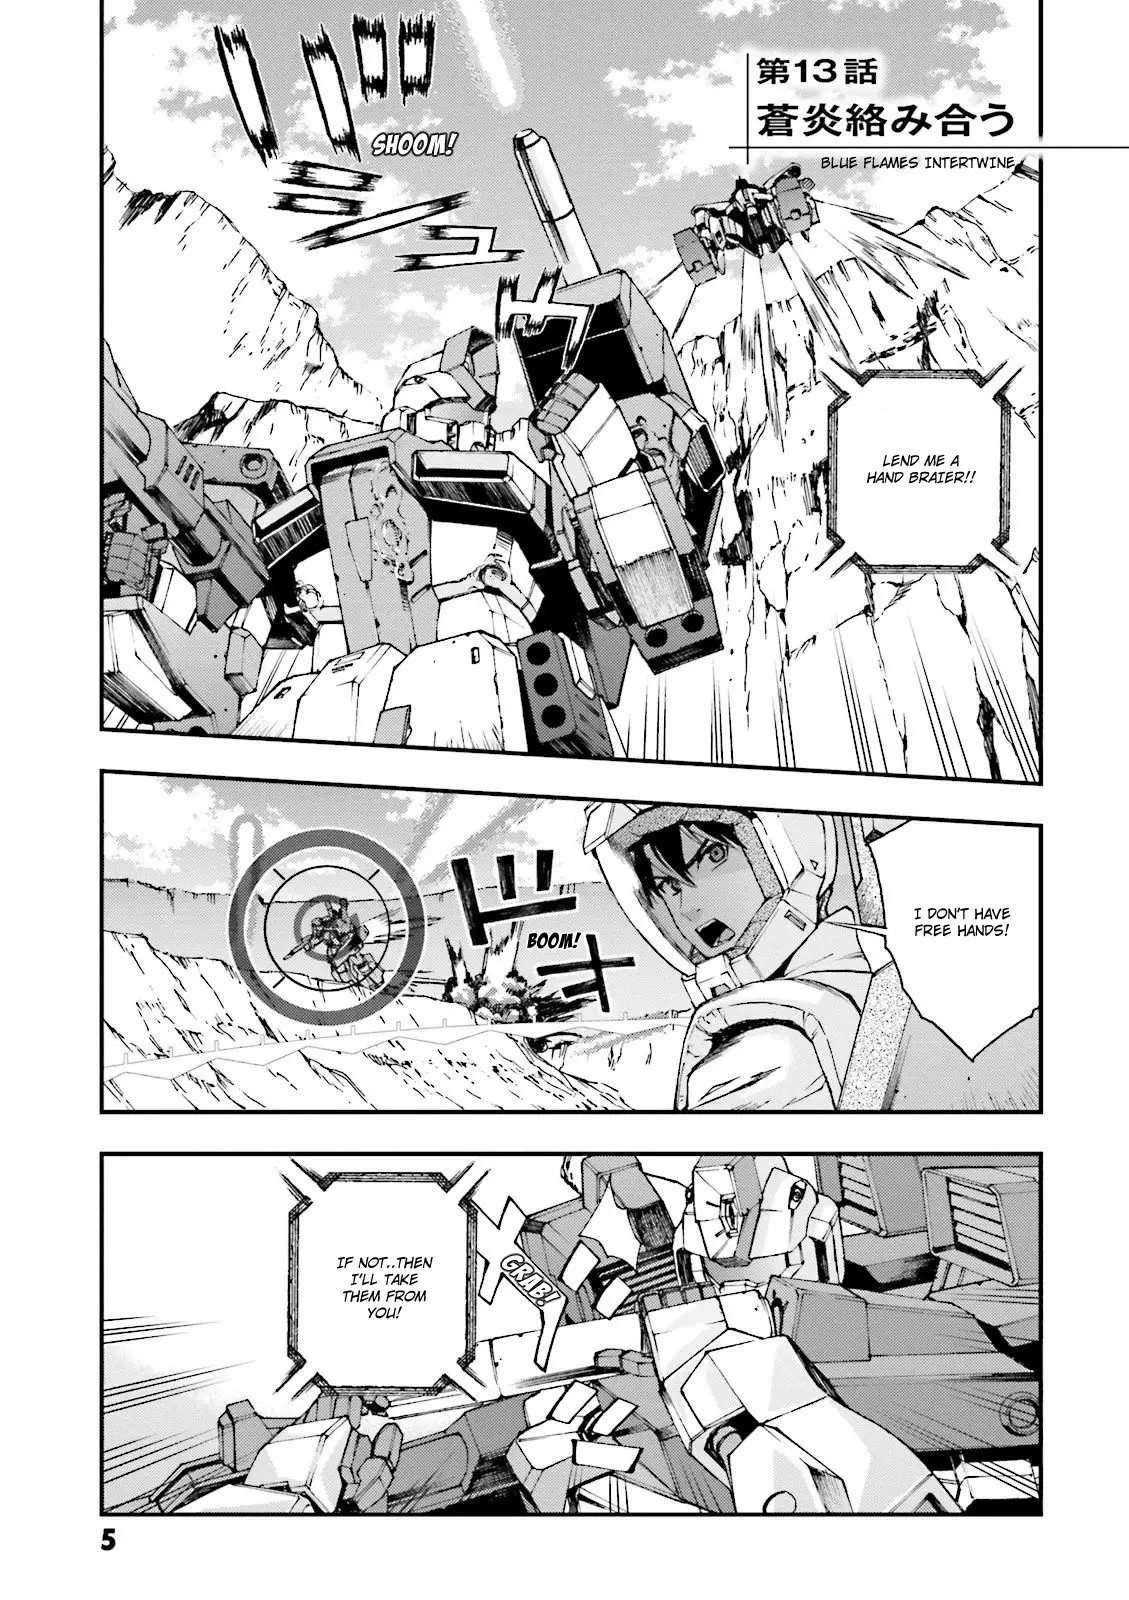 Kidou Senshi Gundam U.c. 0094 - Across The Sky - 13 page 6-00be46dc